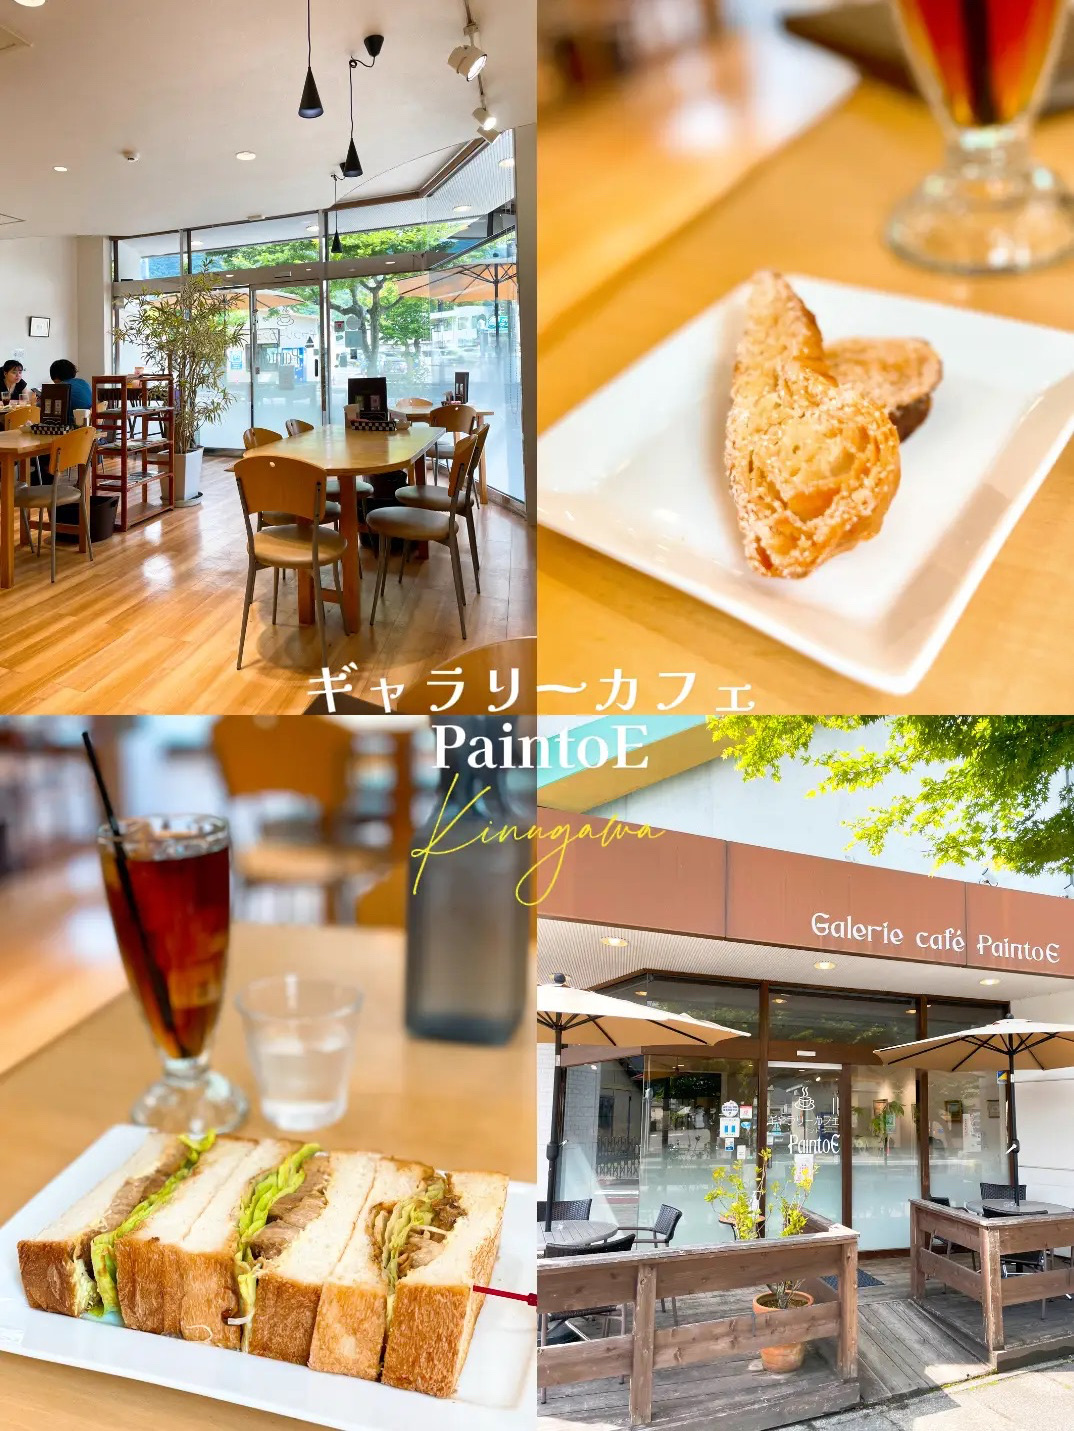 [鬼怒川]车站附近!时尚的咖啡馆,提供丰富的餐点菜单☕️画廊咖啡厅Painto E